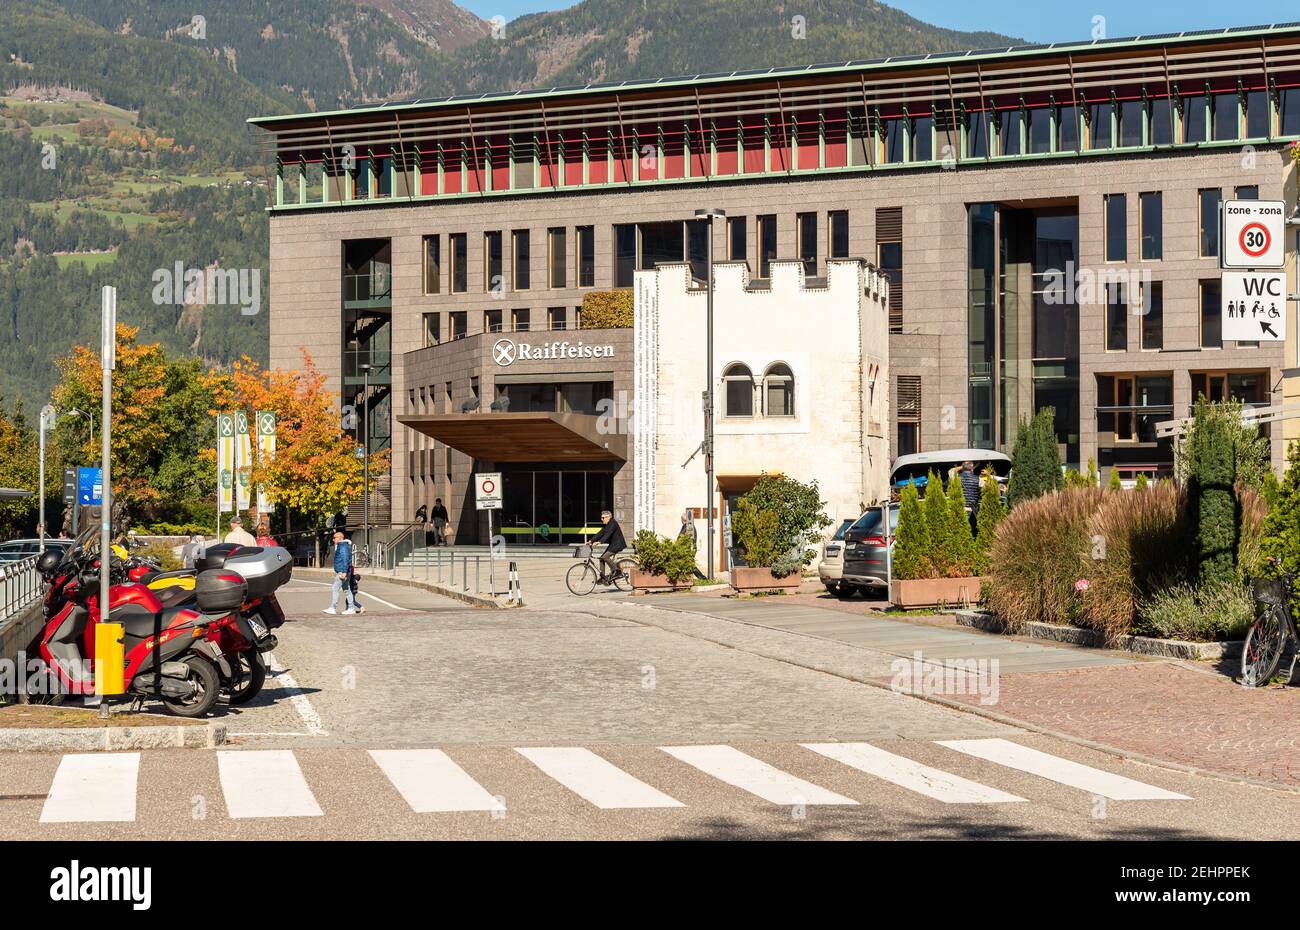 Bruneck - Brunico, Tyrol du Sud, Italie - 11 octobre 2019 : immeuble bancaire Raiffeisen dans le centre de Bruneck - Brunico, Tyrol du Sud Banque D'Images